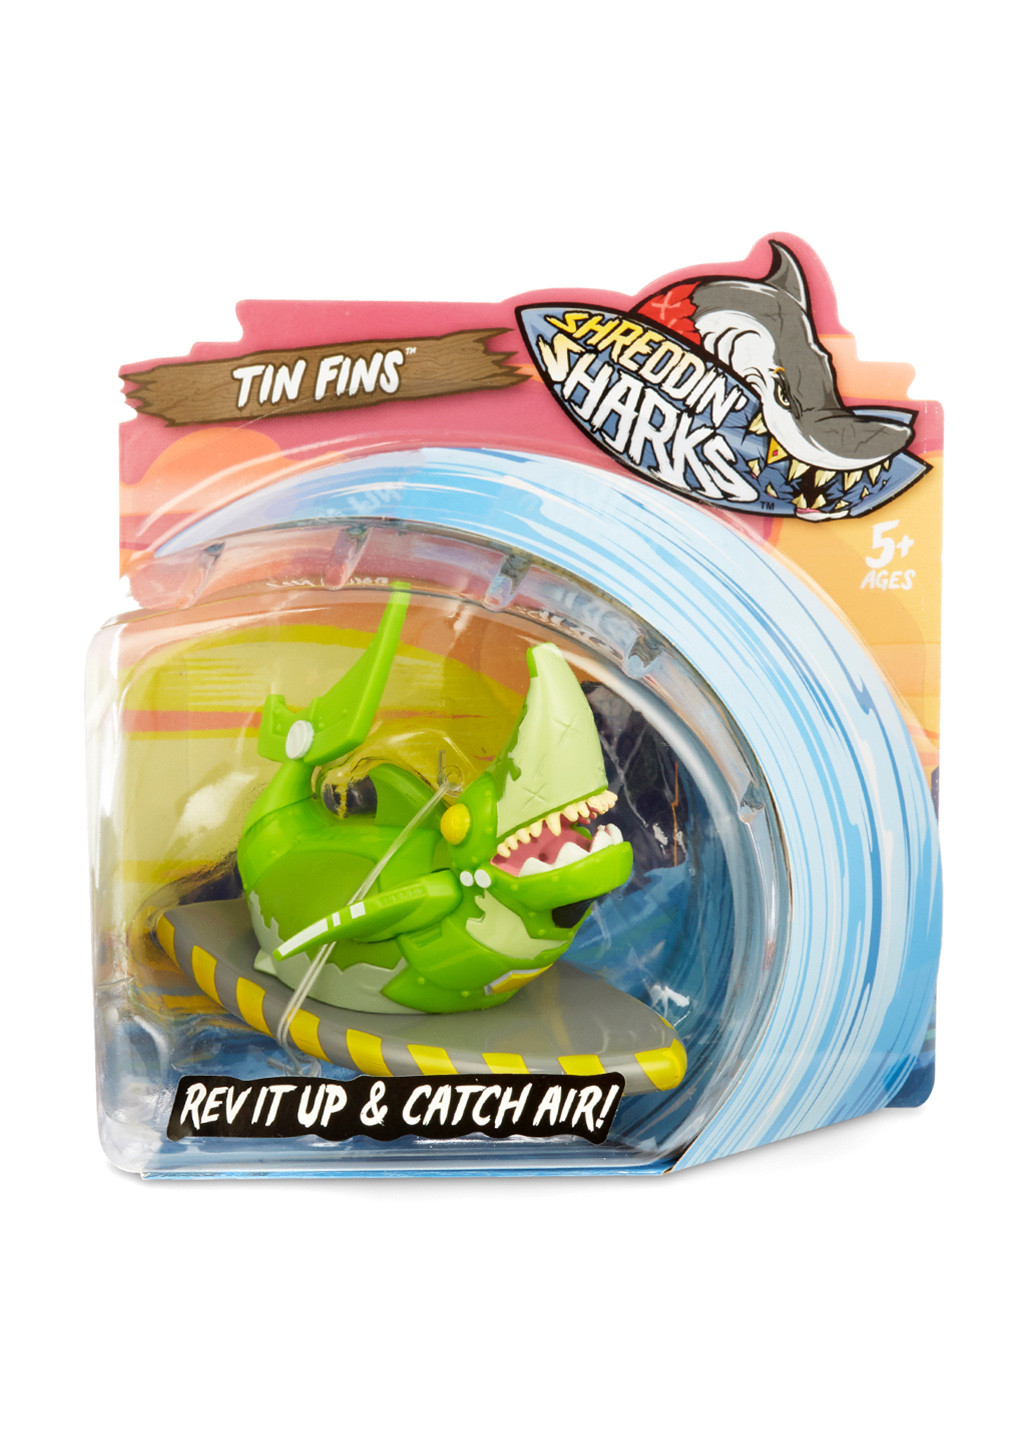 Фингерборд с фигуркой shreddin' sharks - tin fins Shreddin Sharks (155062342)